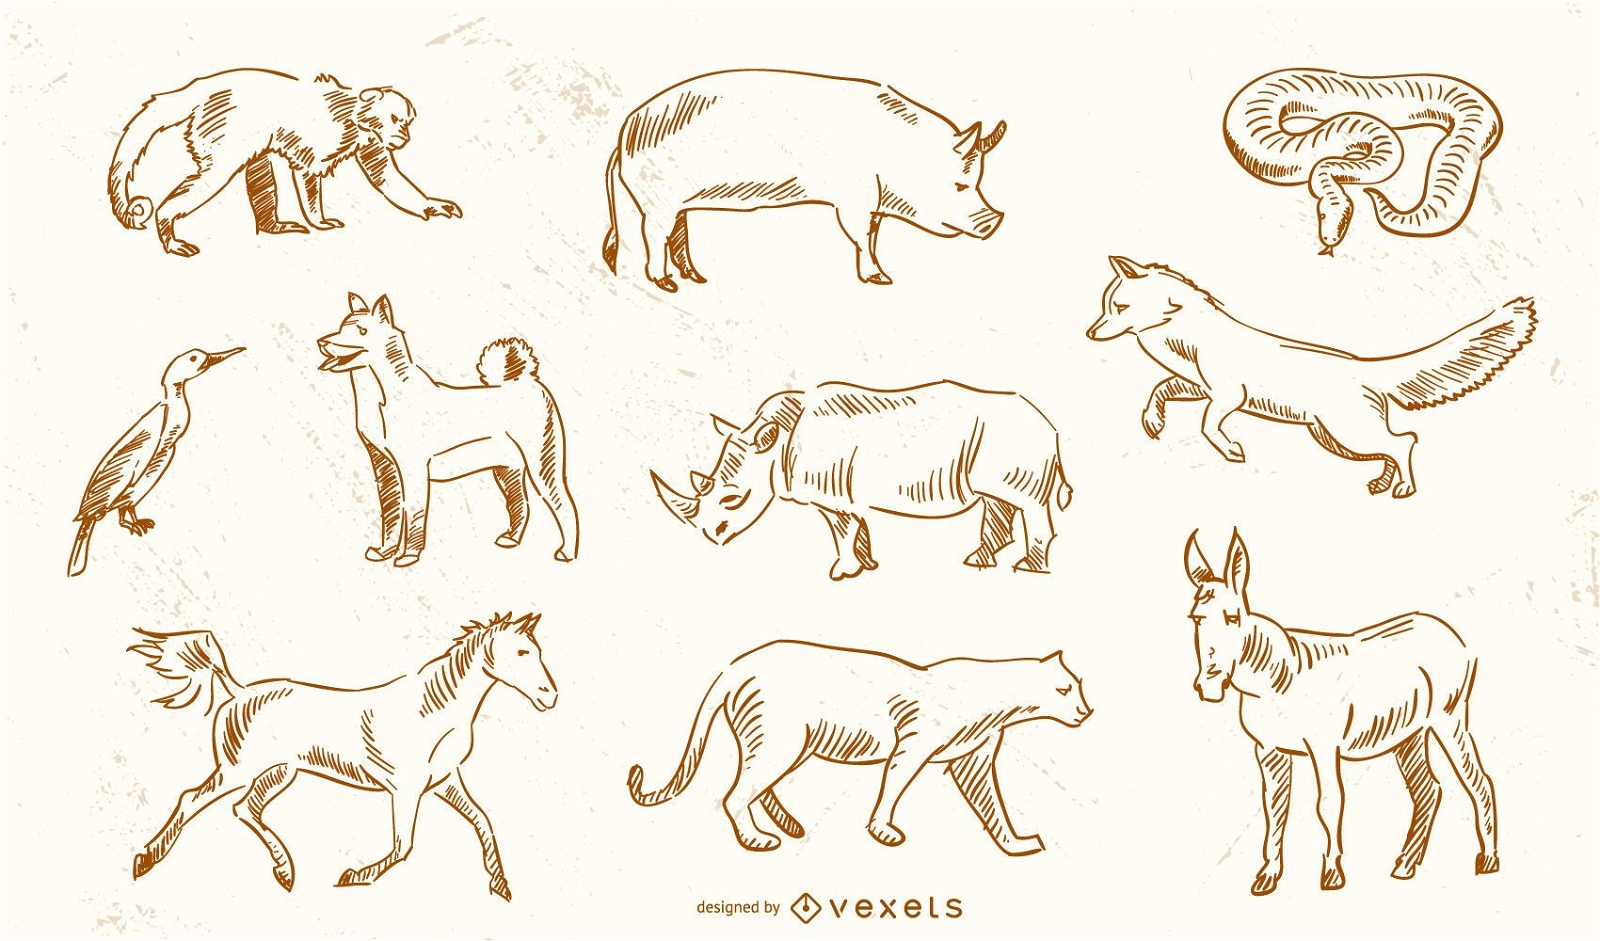 Animal Vectors From Jimiyo 2